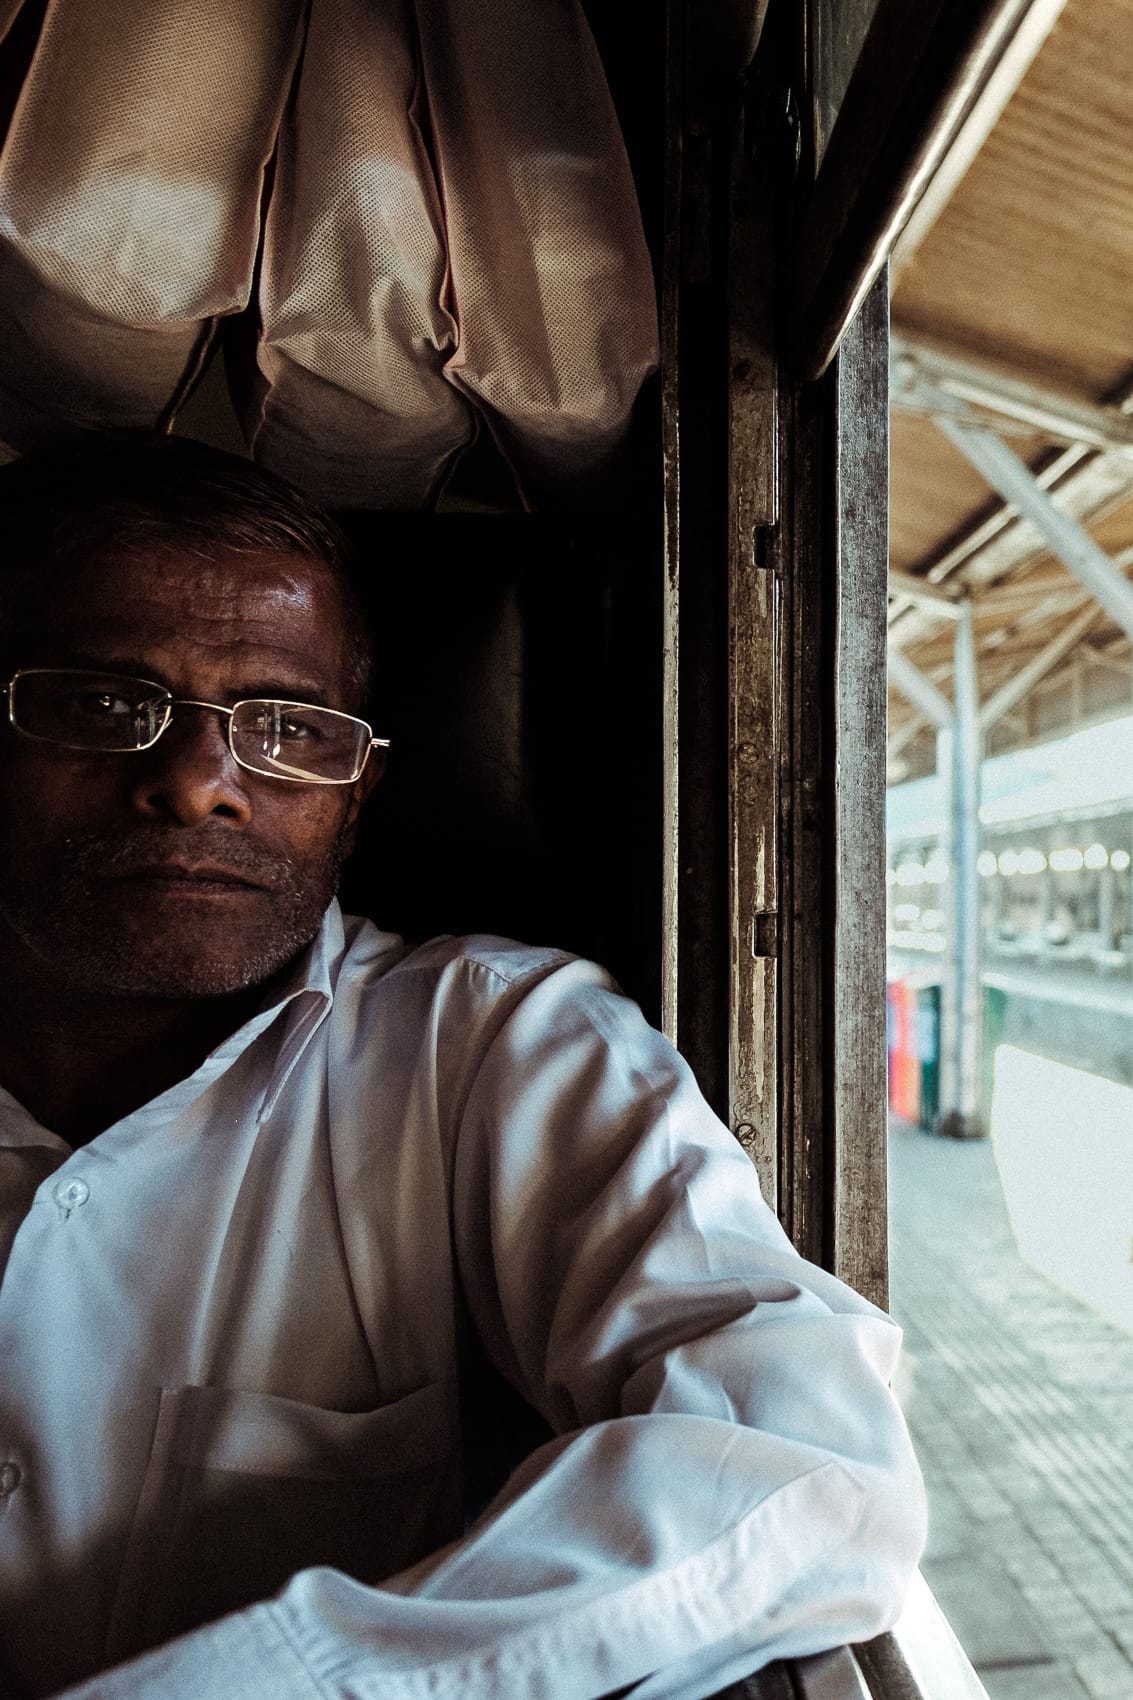 Sri Lanka Kandy 2015 12 Passenget On a Train